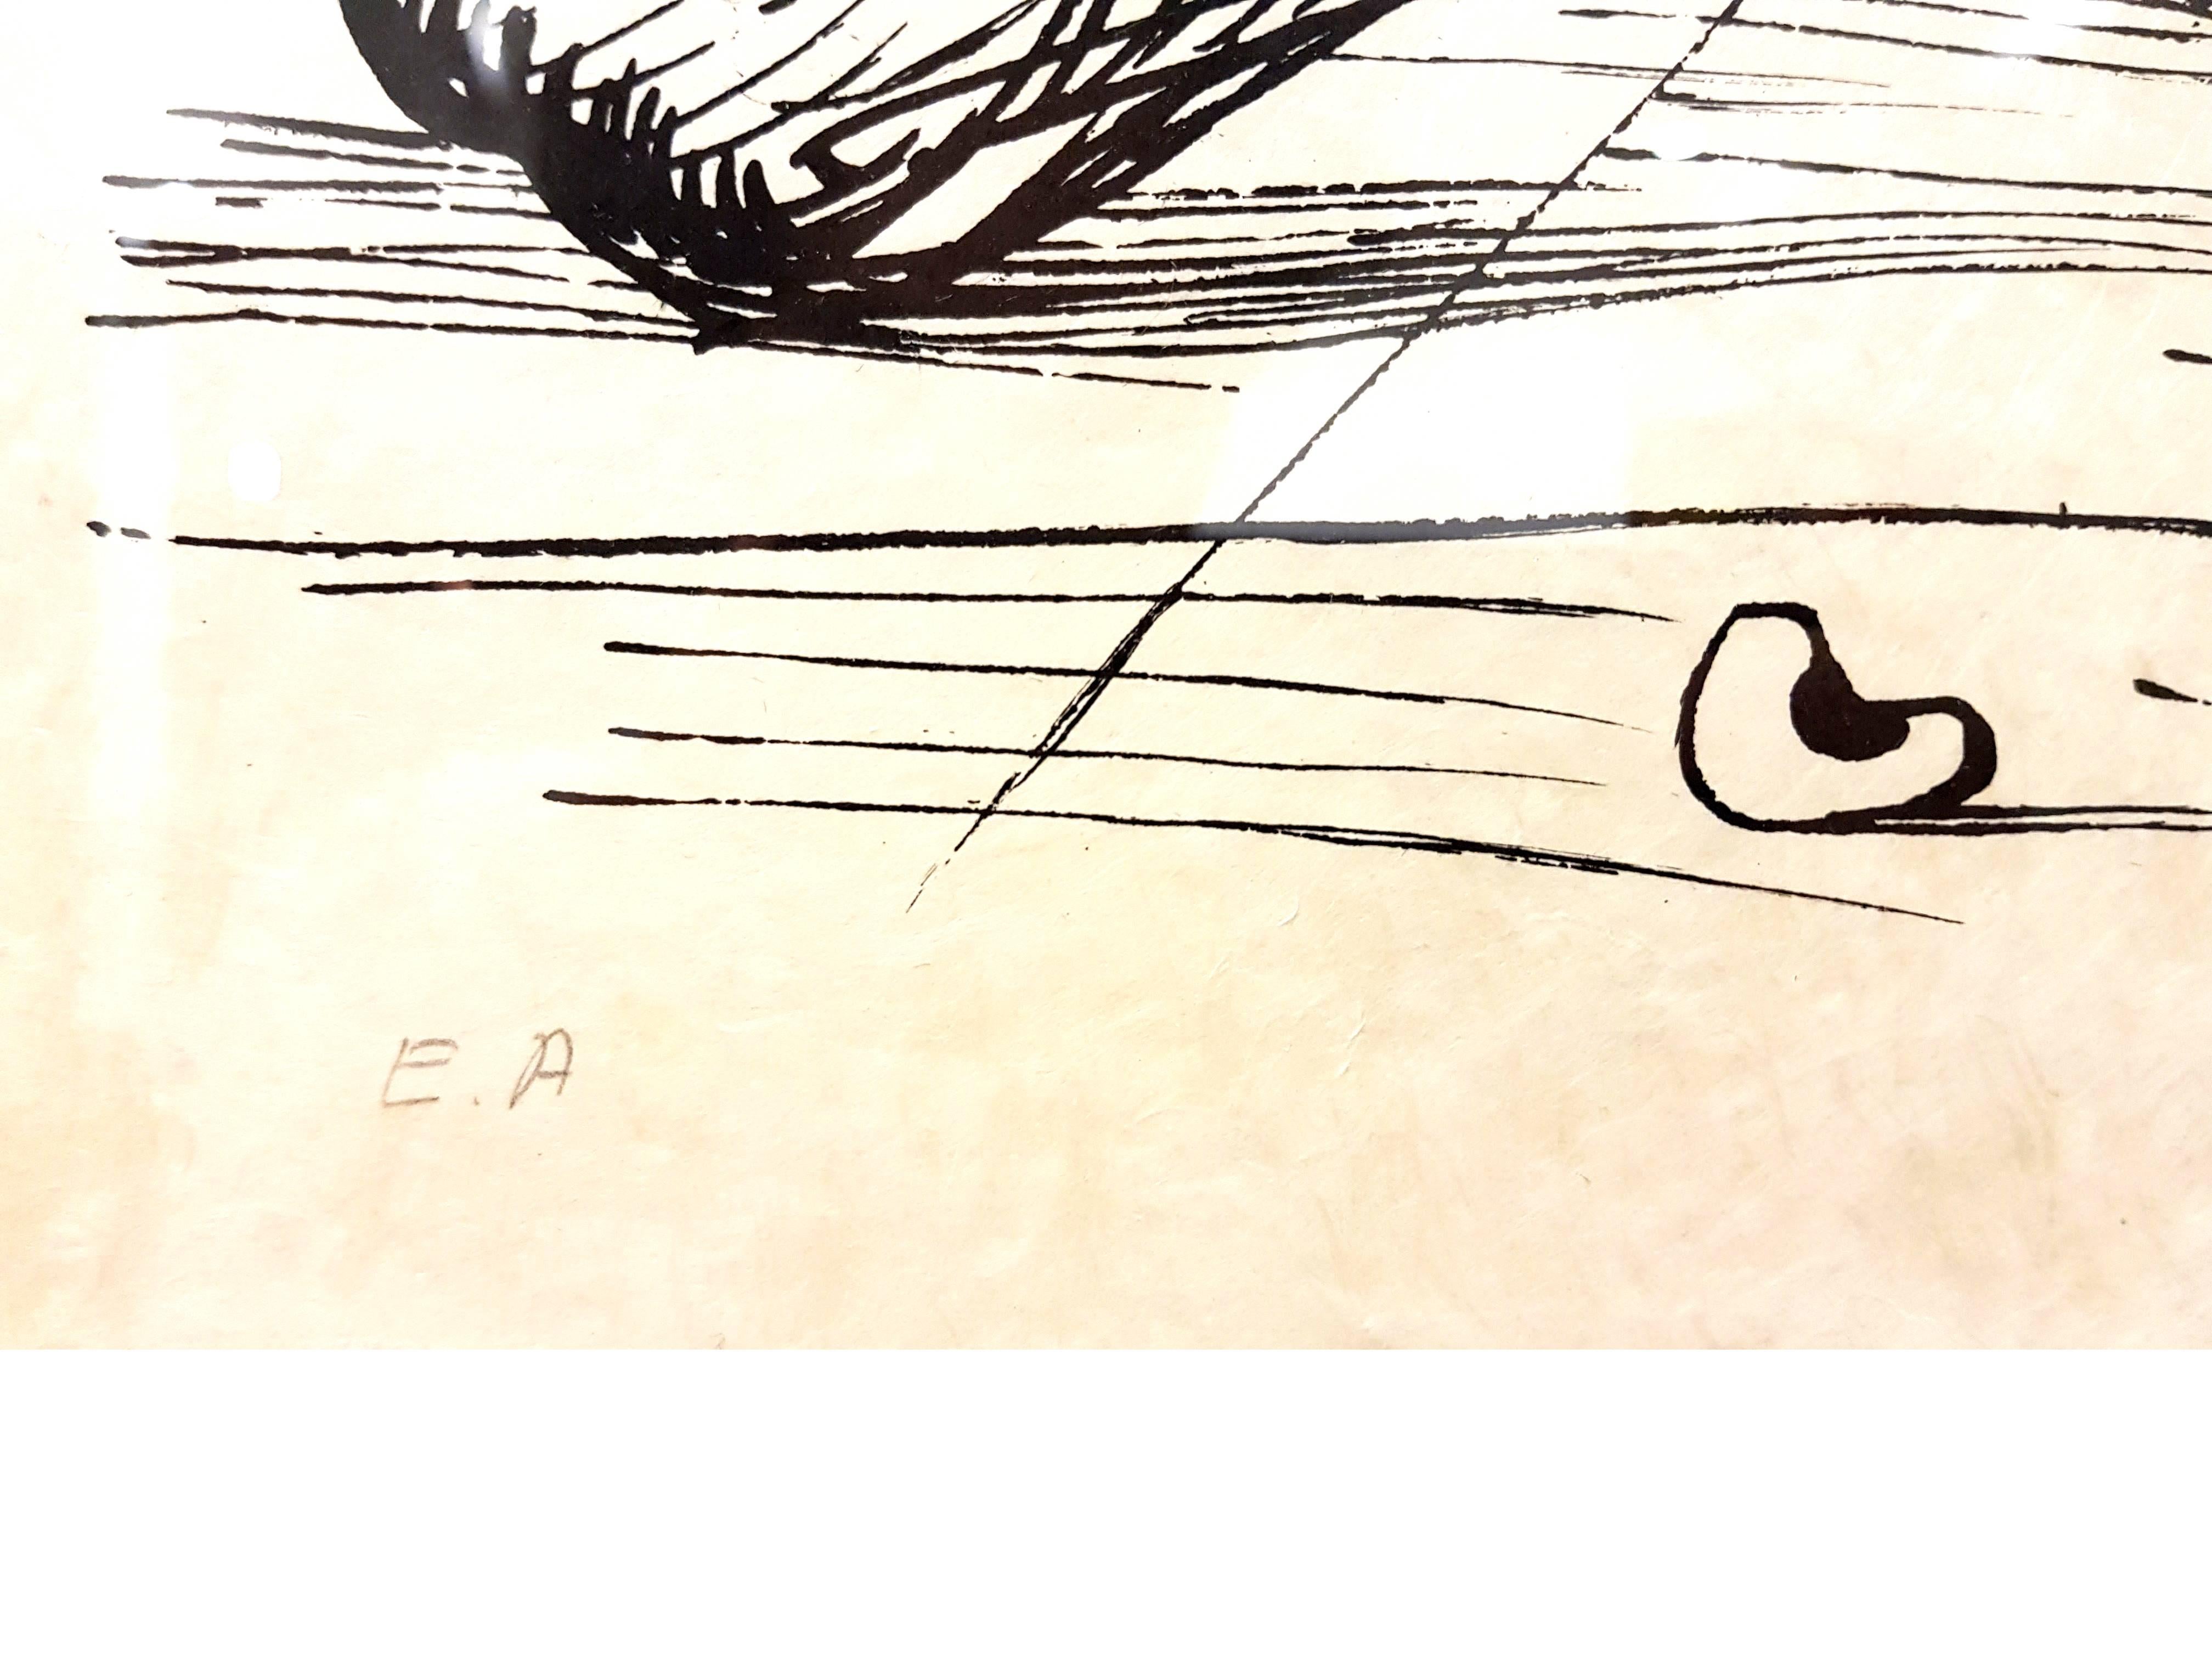 Lithographie signée à la main par Salvador Dali
Cette édition est sur papier japonais
Titre : Les rêves de Pantagruel
Signé au crayon par Salvador Dali
Dimensions : 76 x 56 cm
Edition : EA
1973
Références : Field 73-7 (p. 173-174) / Michler &